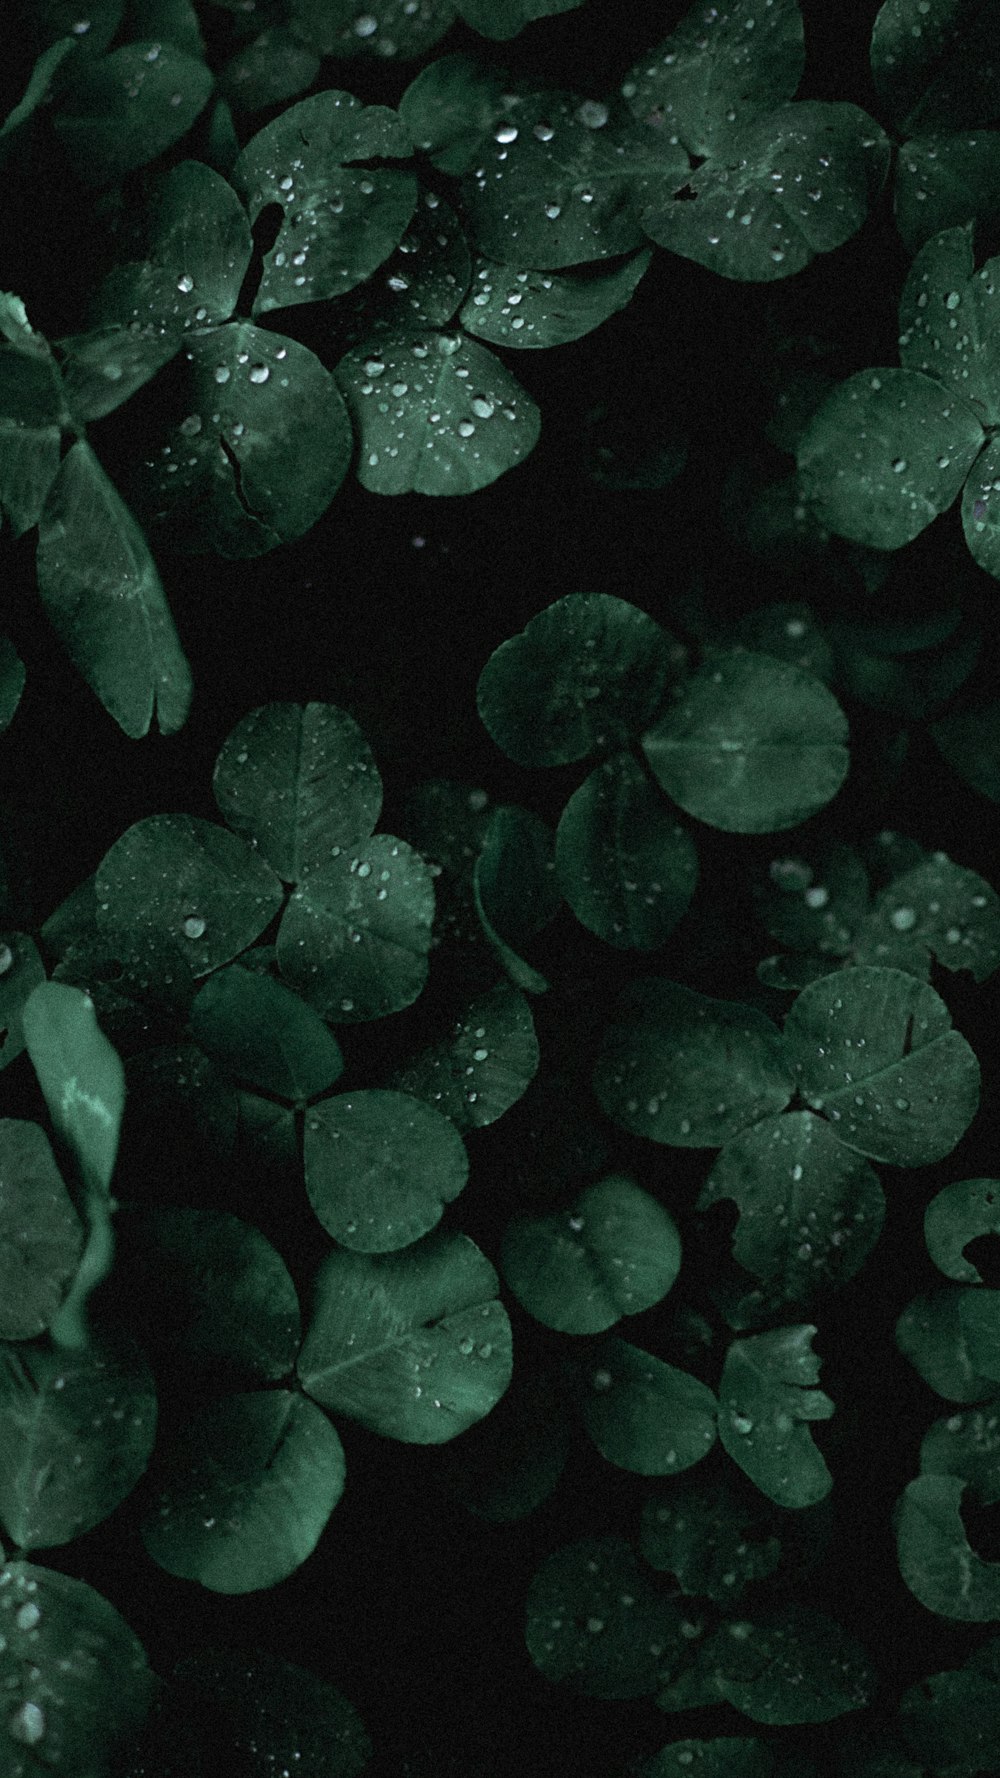 folhas verdes com gotículas de água